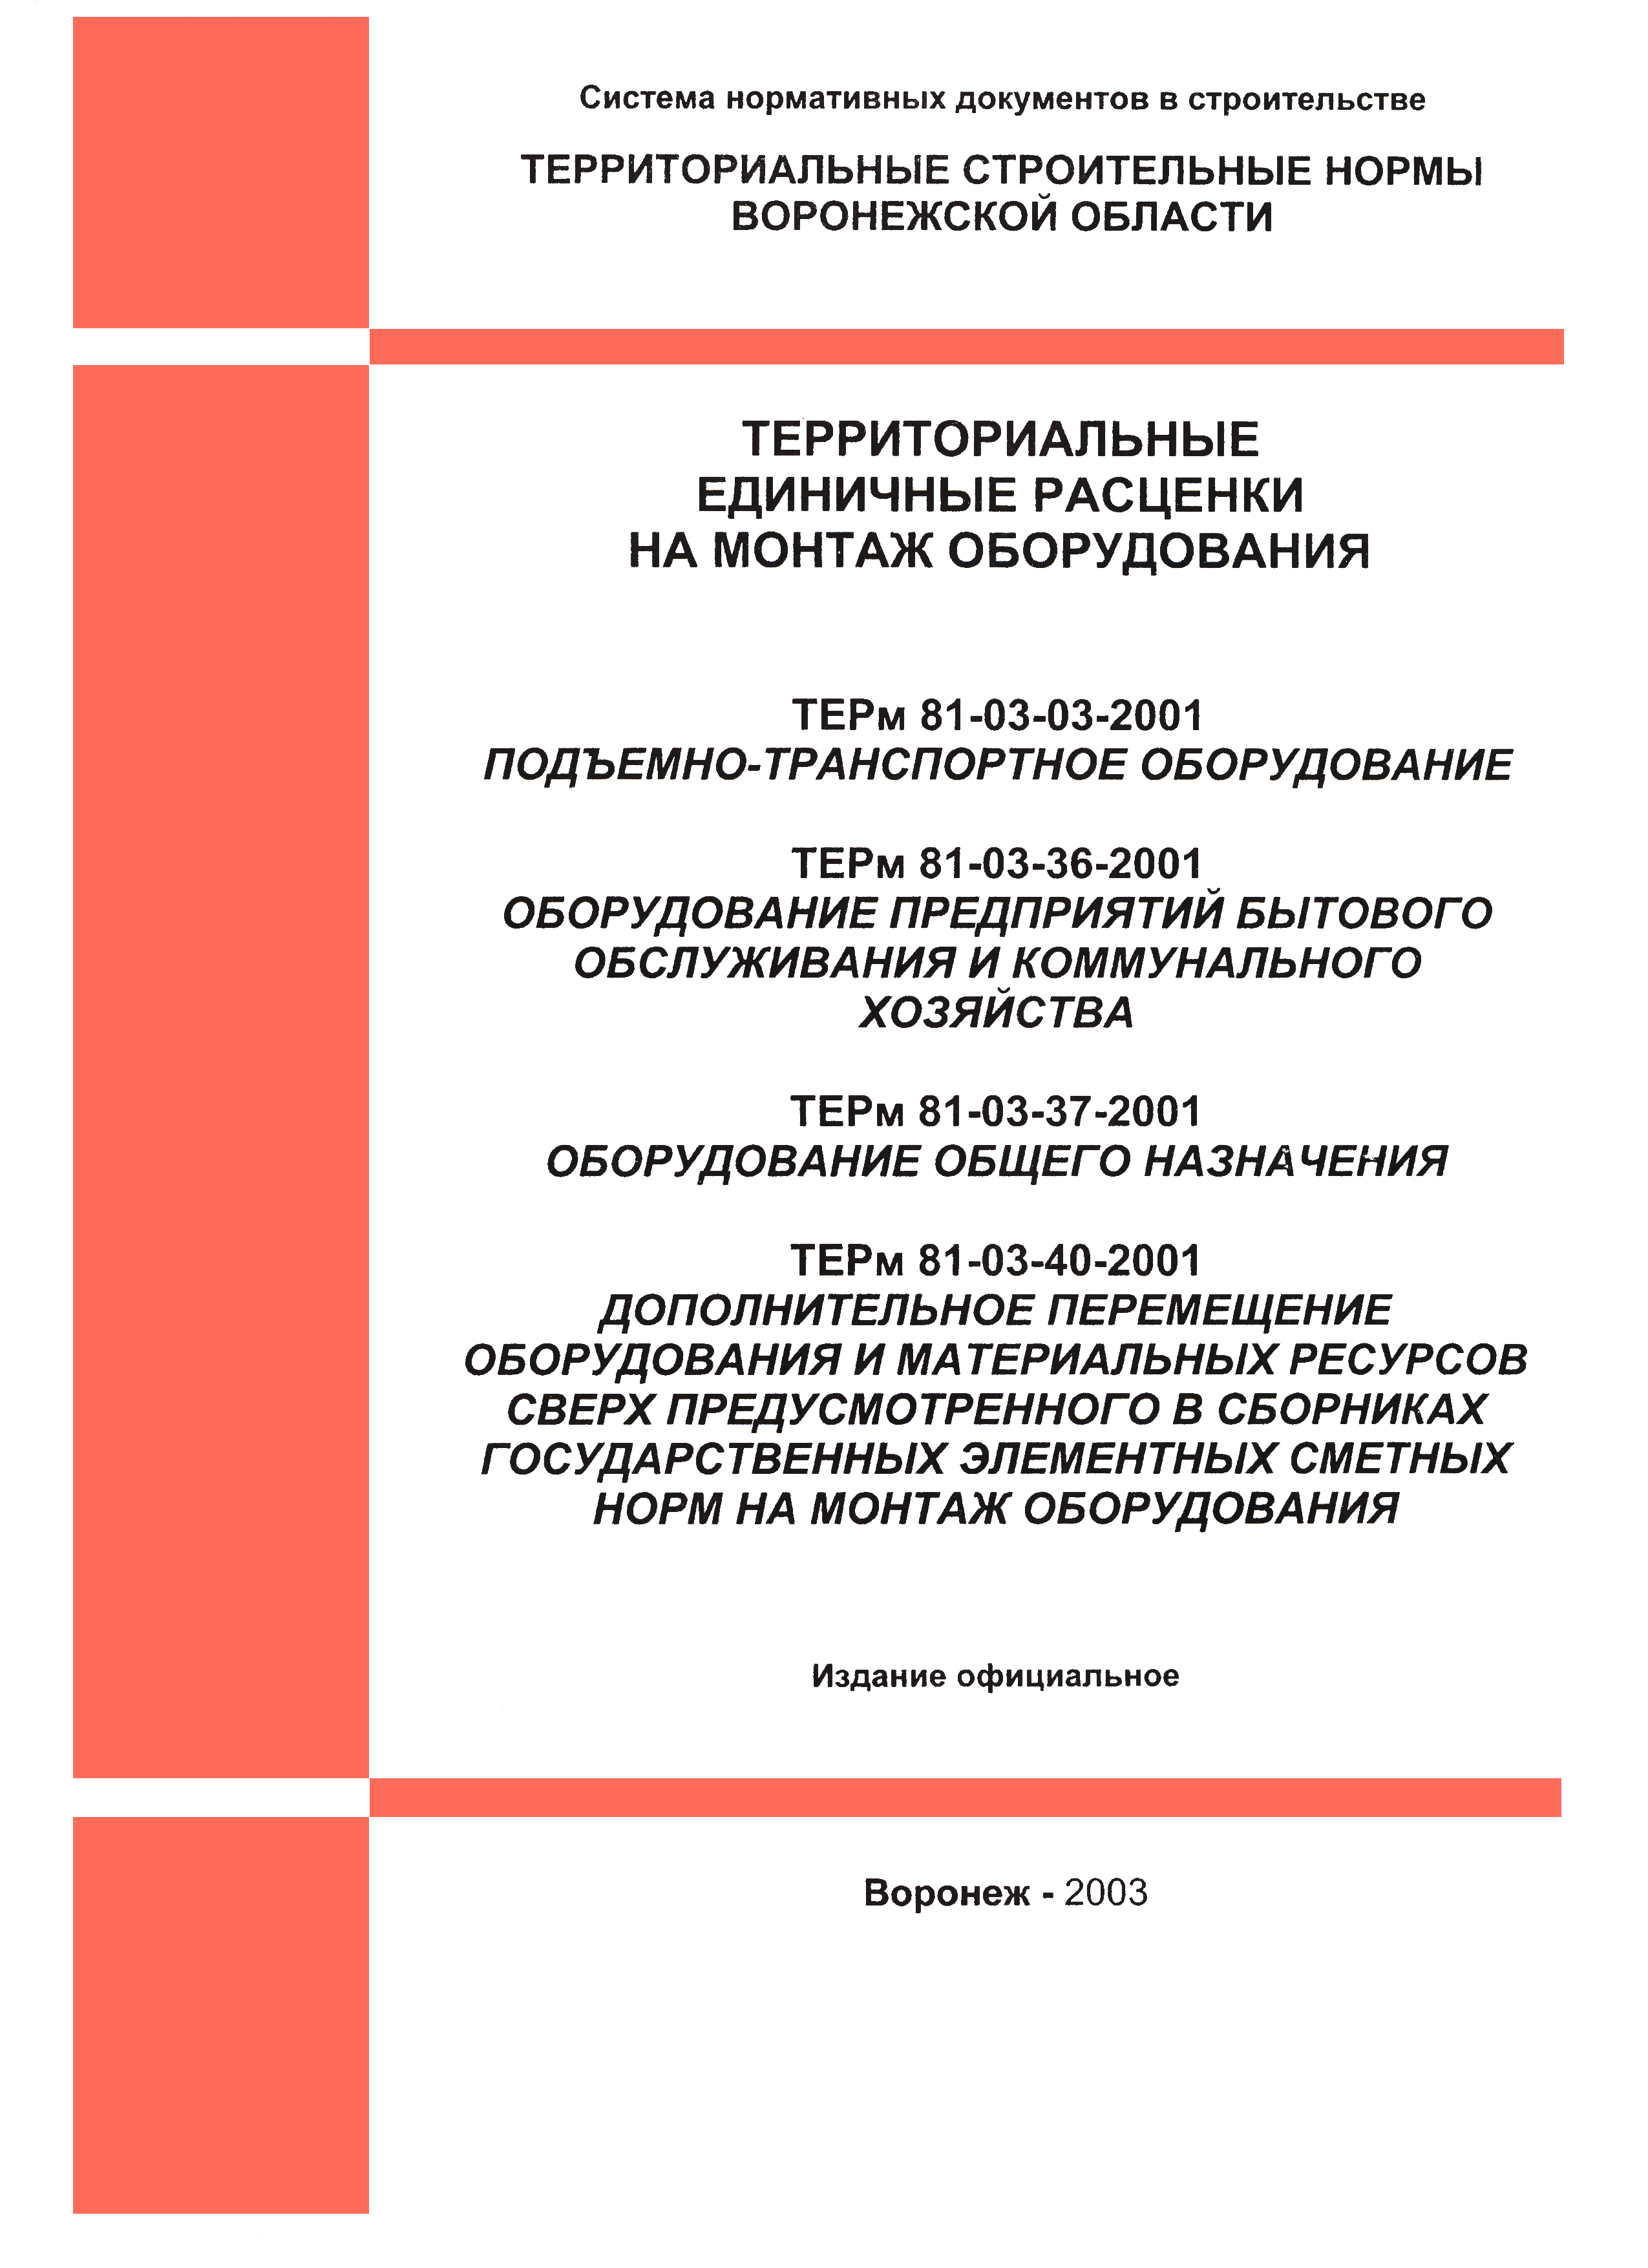 ТЕРм Воронежская область 81-03-36-2001